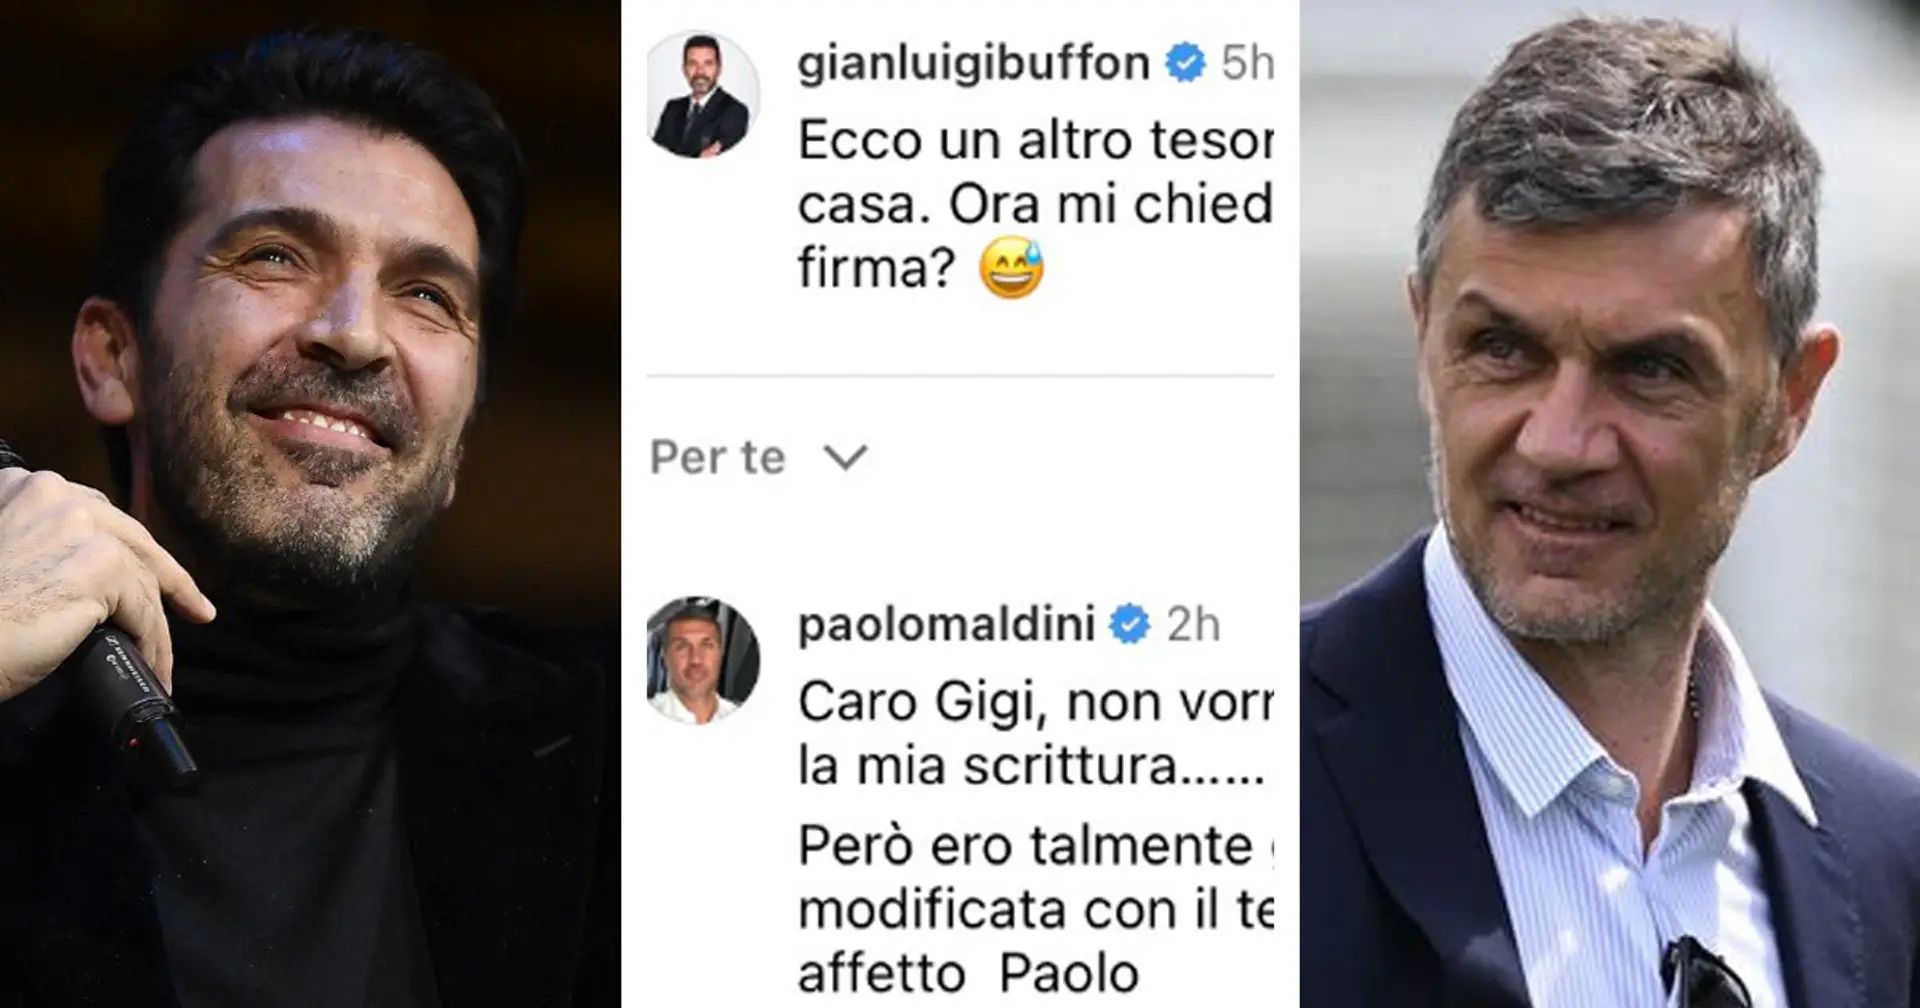 Siparietto tra ex Campioni! Buffon e Maldini scherzano sui social: "Ero così giovane che ho cambiato la firma"